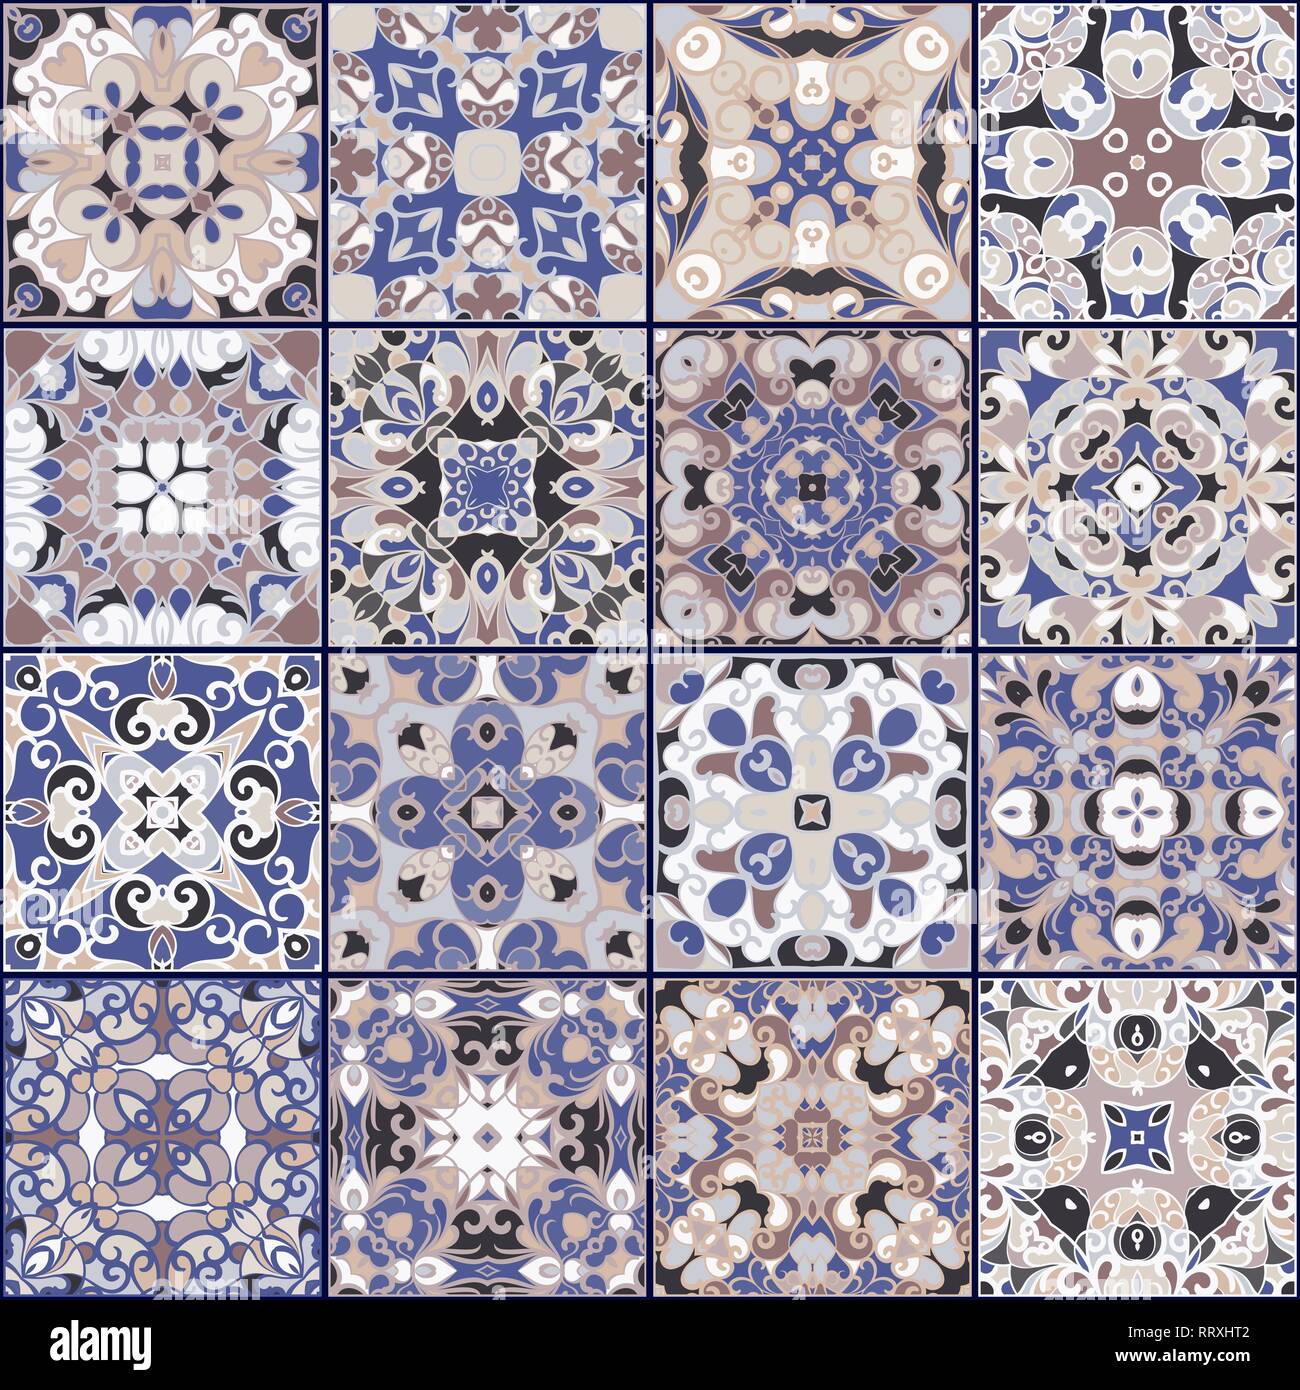 Eine Sammlung von Keramikfliesen in blauen Farben. Eine Reihe von quadratischen Muster im ethnischen Stil. Vector Illustration. Stock Vektor